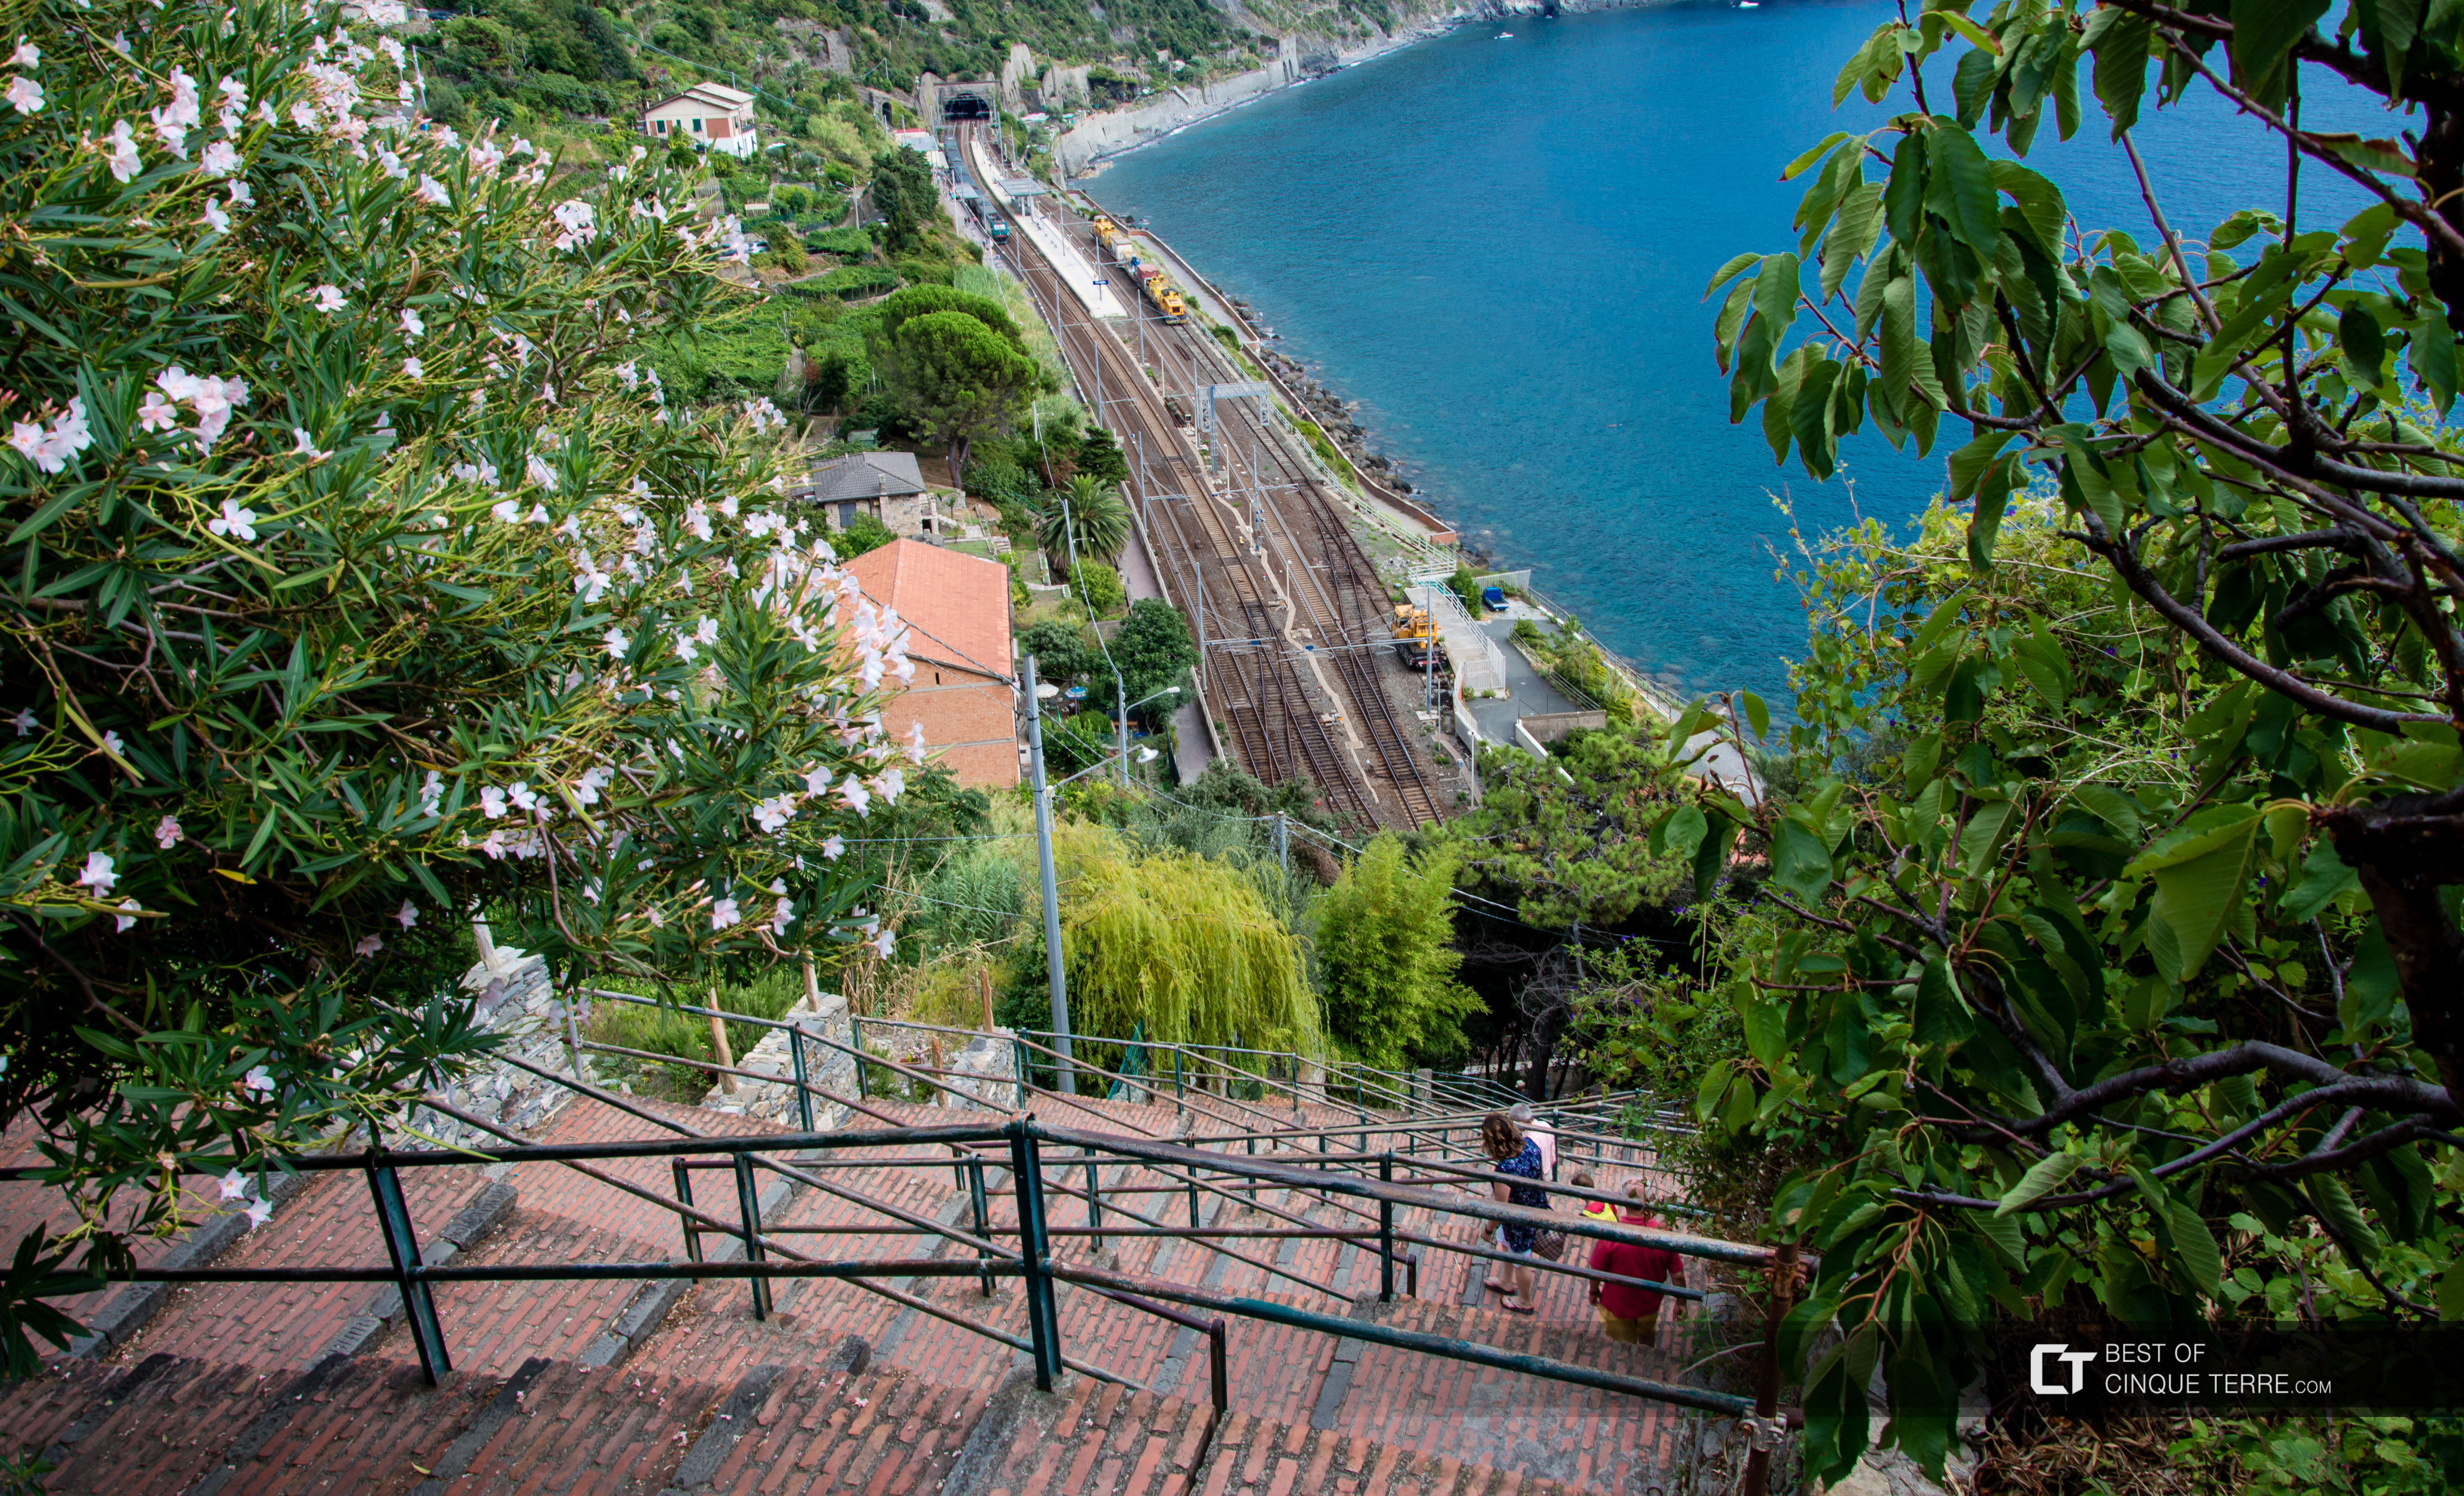 La bajada desde el pueblo hacia la estación, Corniglia, Cinque Terre, Italia